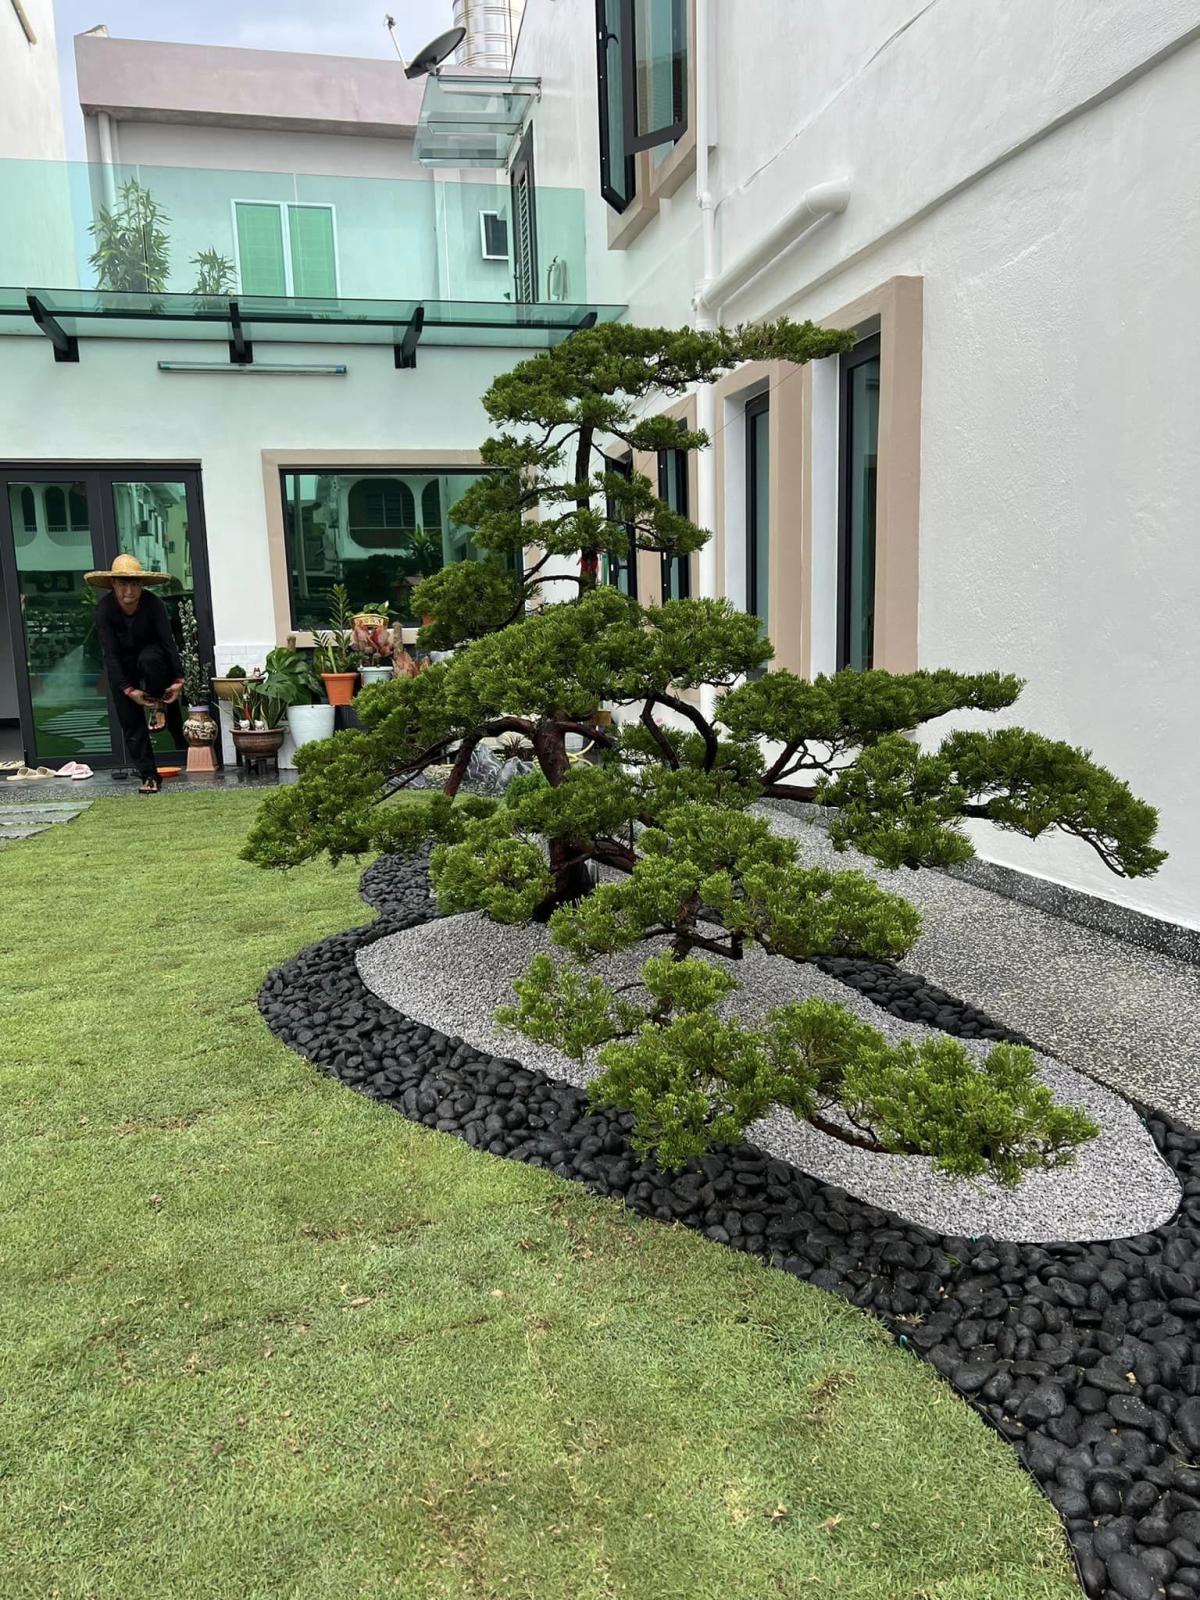 Pomysł na japoński ogród skalny - nr 5 / 40 pomysłów na zen w ogrodzie